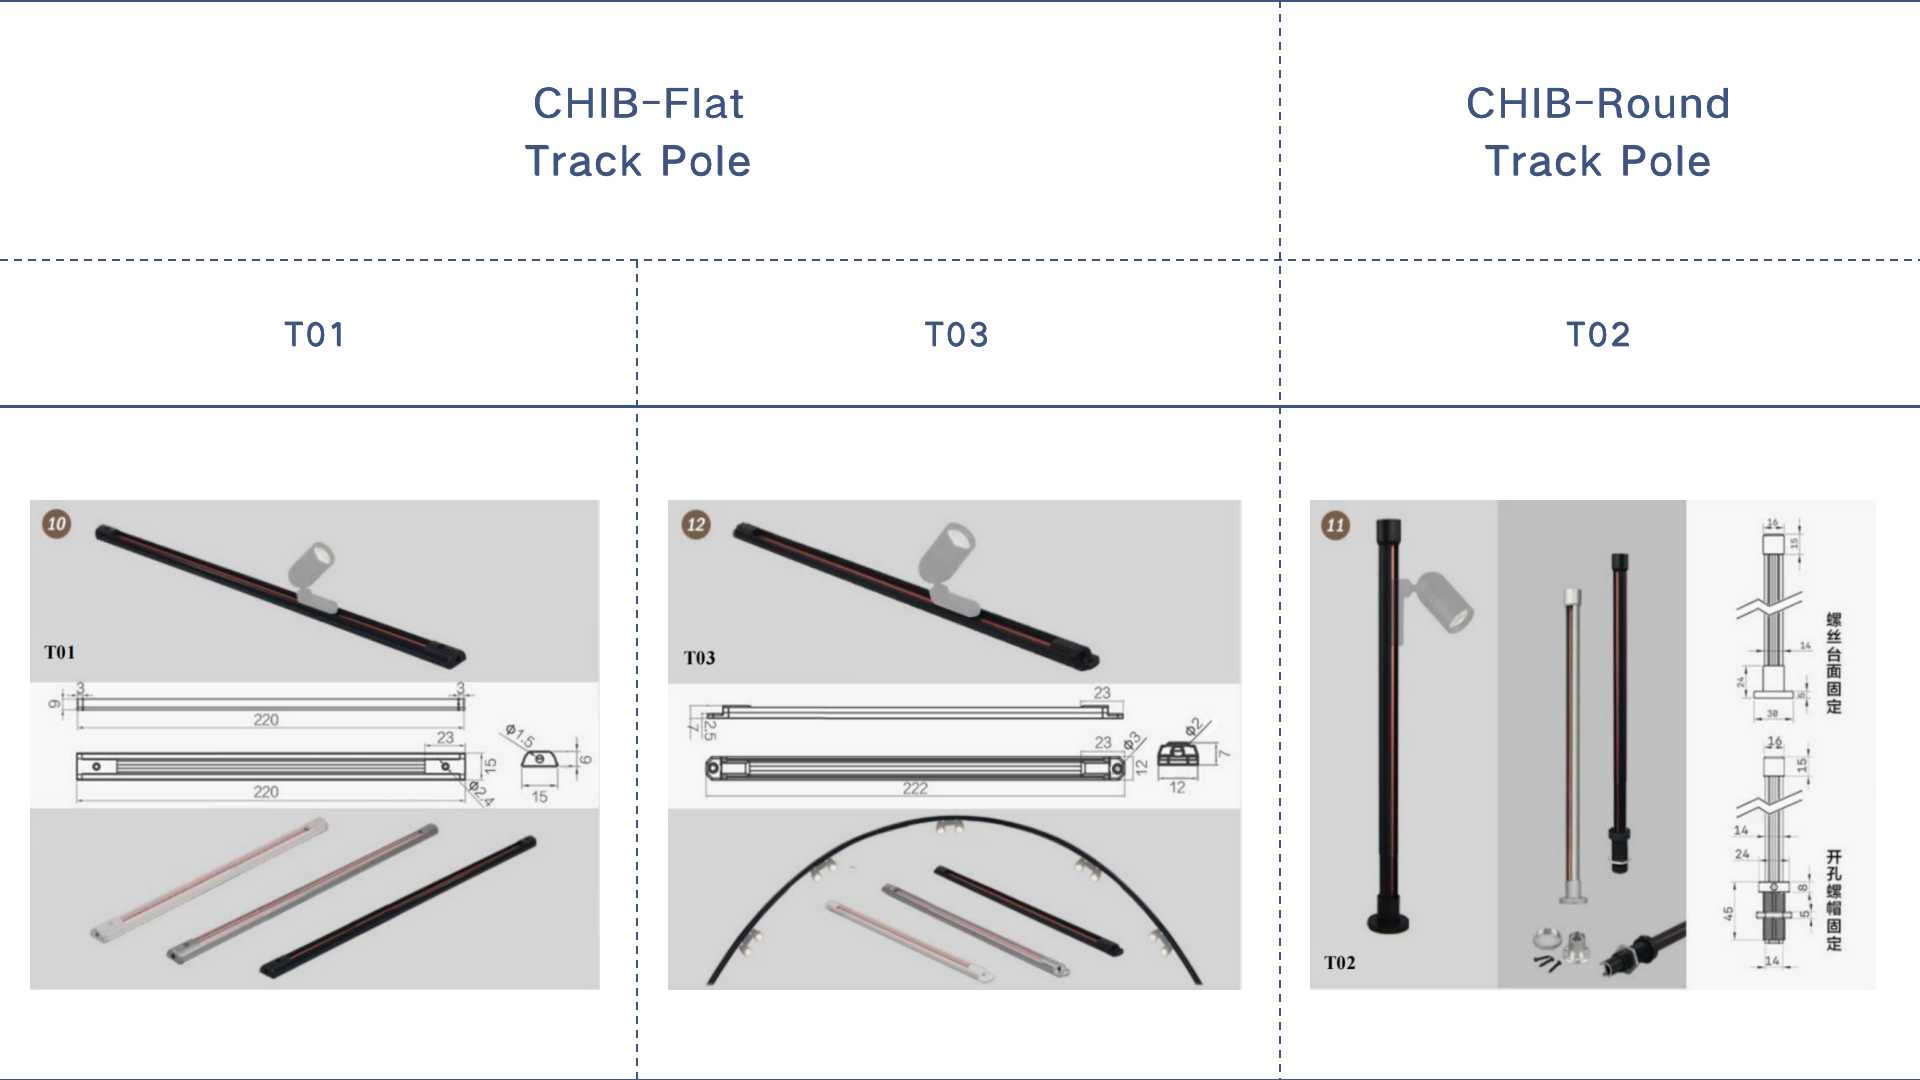 So wählen Sie zwischen CHIB-Flat Track Pole und CHIB-Round Track Pole